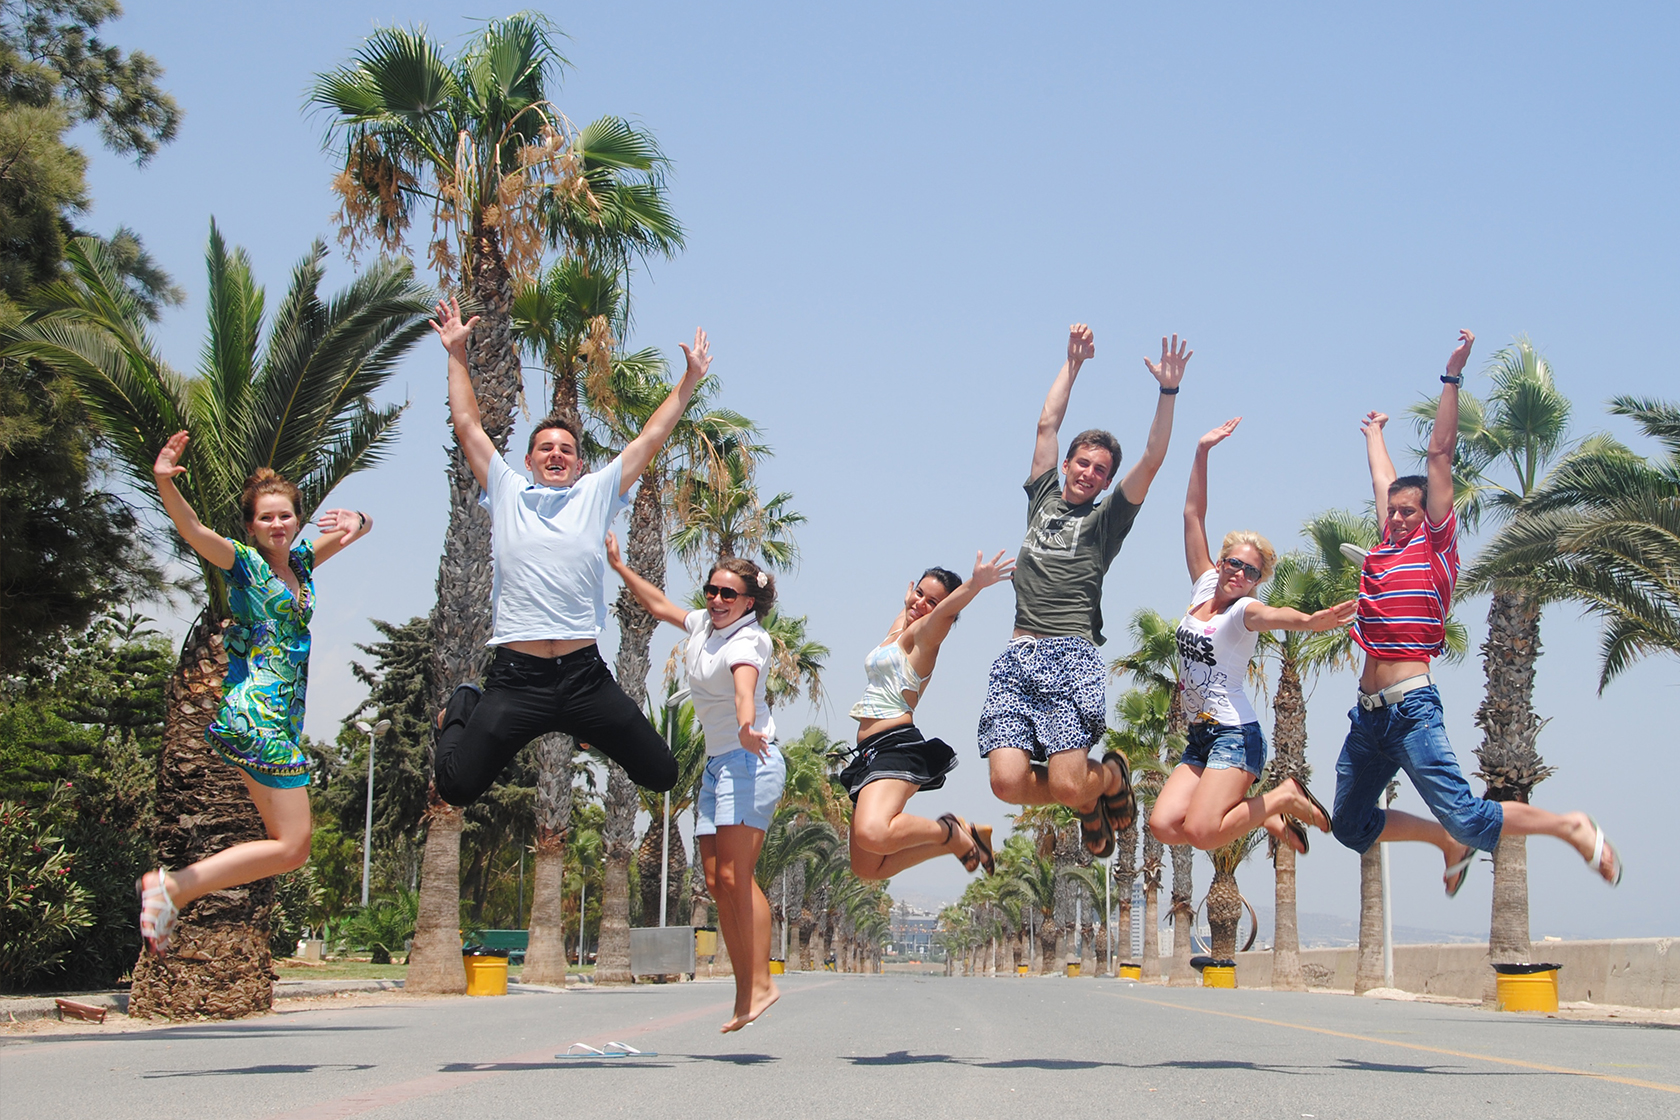 В университете есть каникулы. Лагерь на Кипре. Летние каникулы на море. Летний отдых для молодежи. Молодежь на отдыхе.